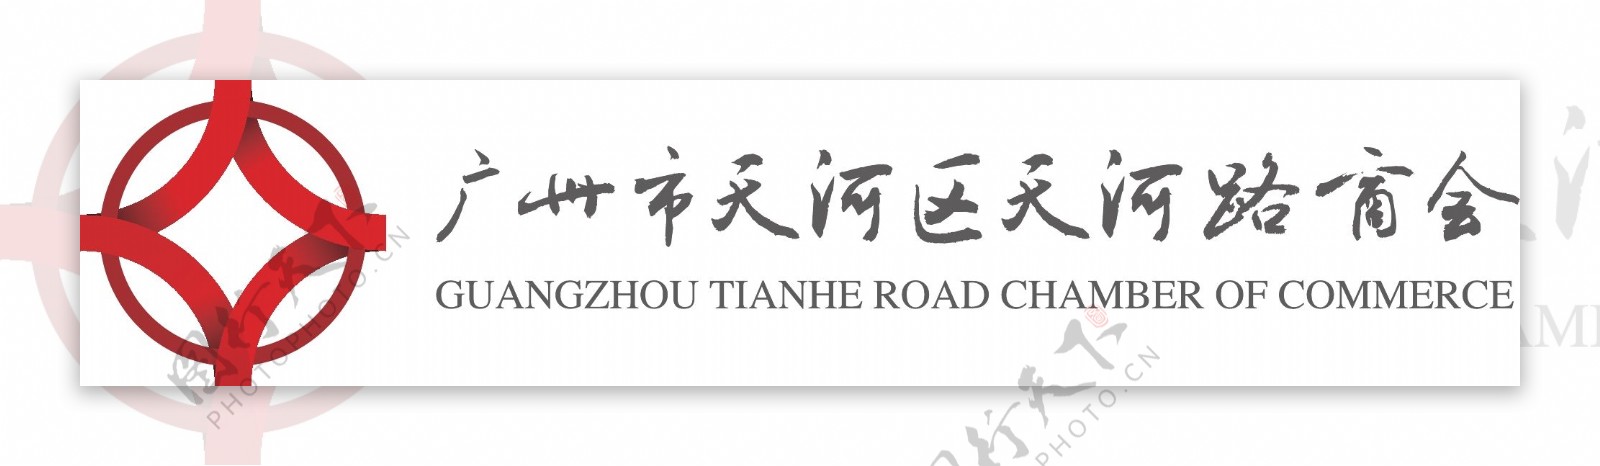 天河路商会logo图片